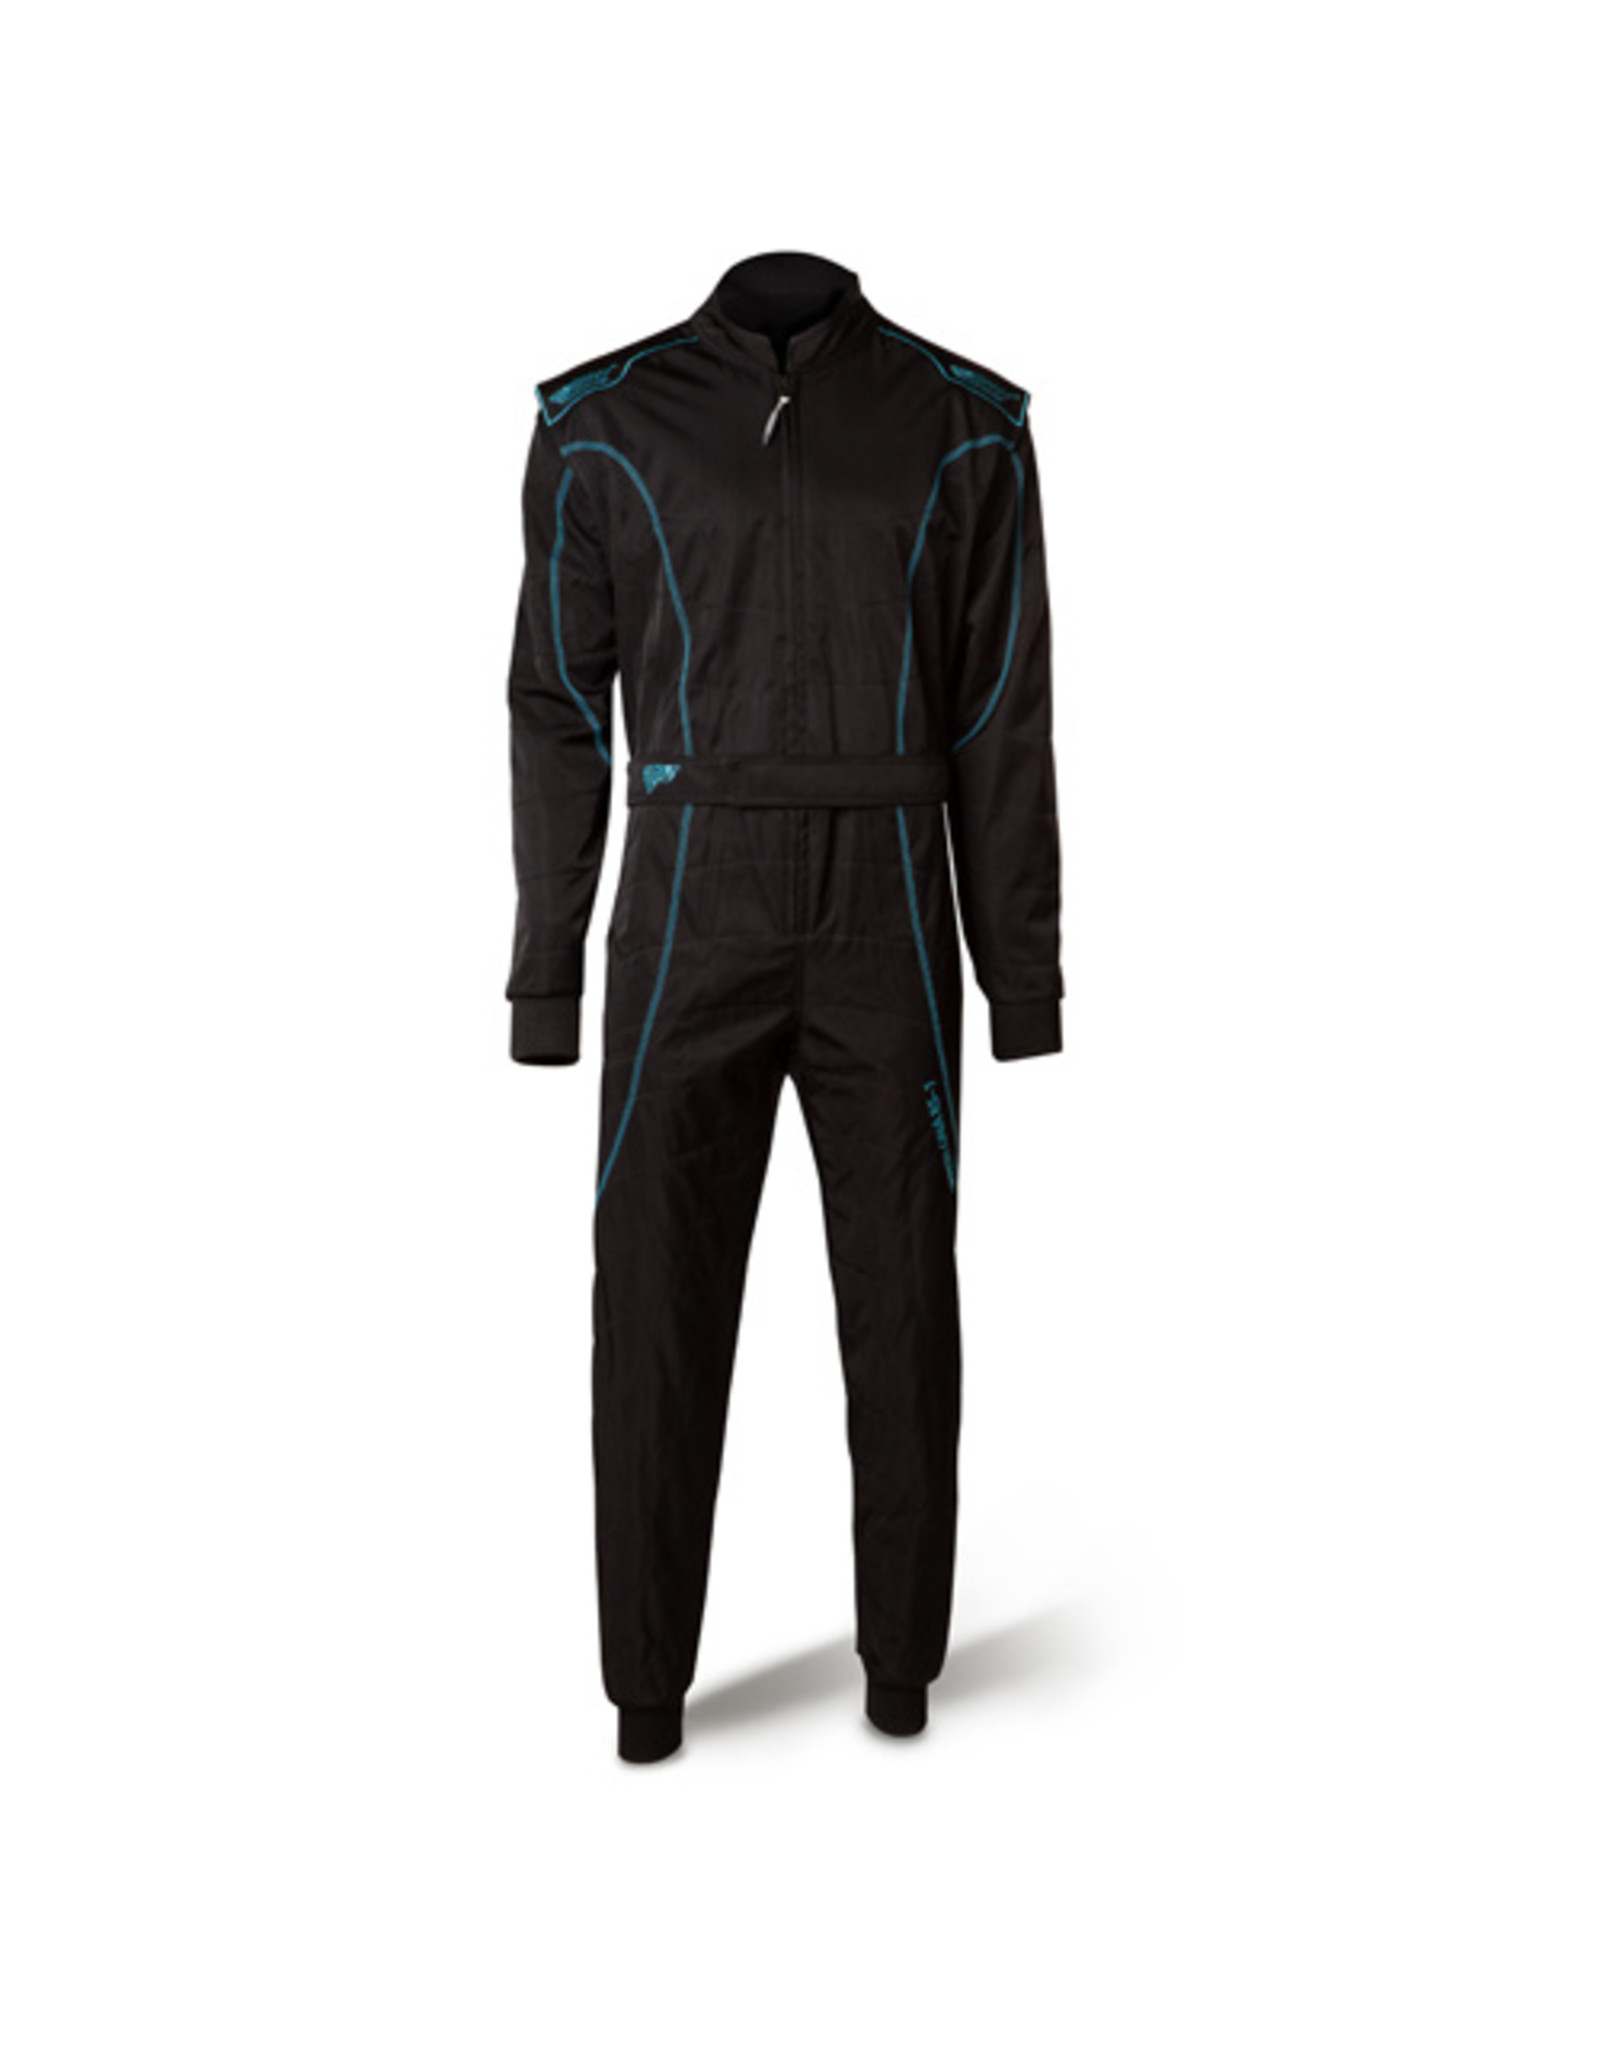 Speed Racewear Speed LVL2 suit RS-1 Barcelona black / Fluo cyan